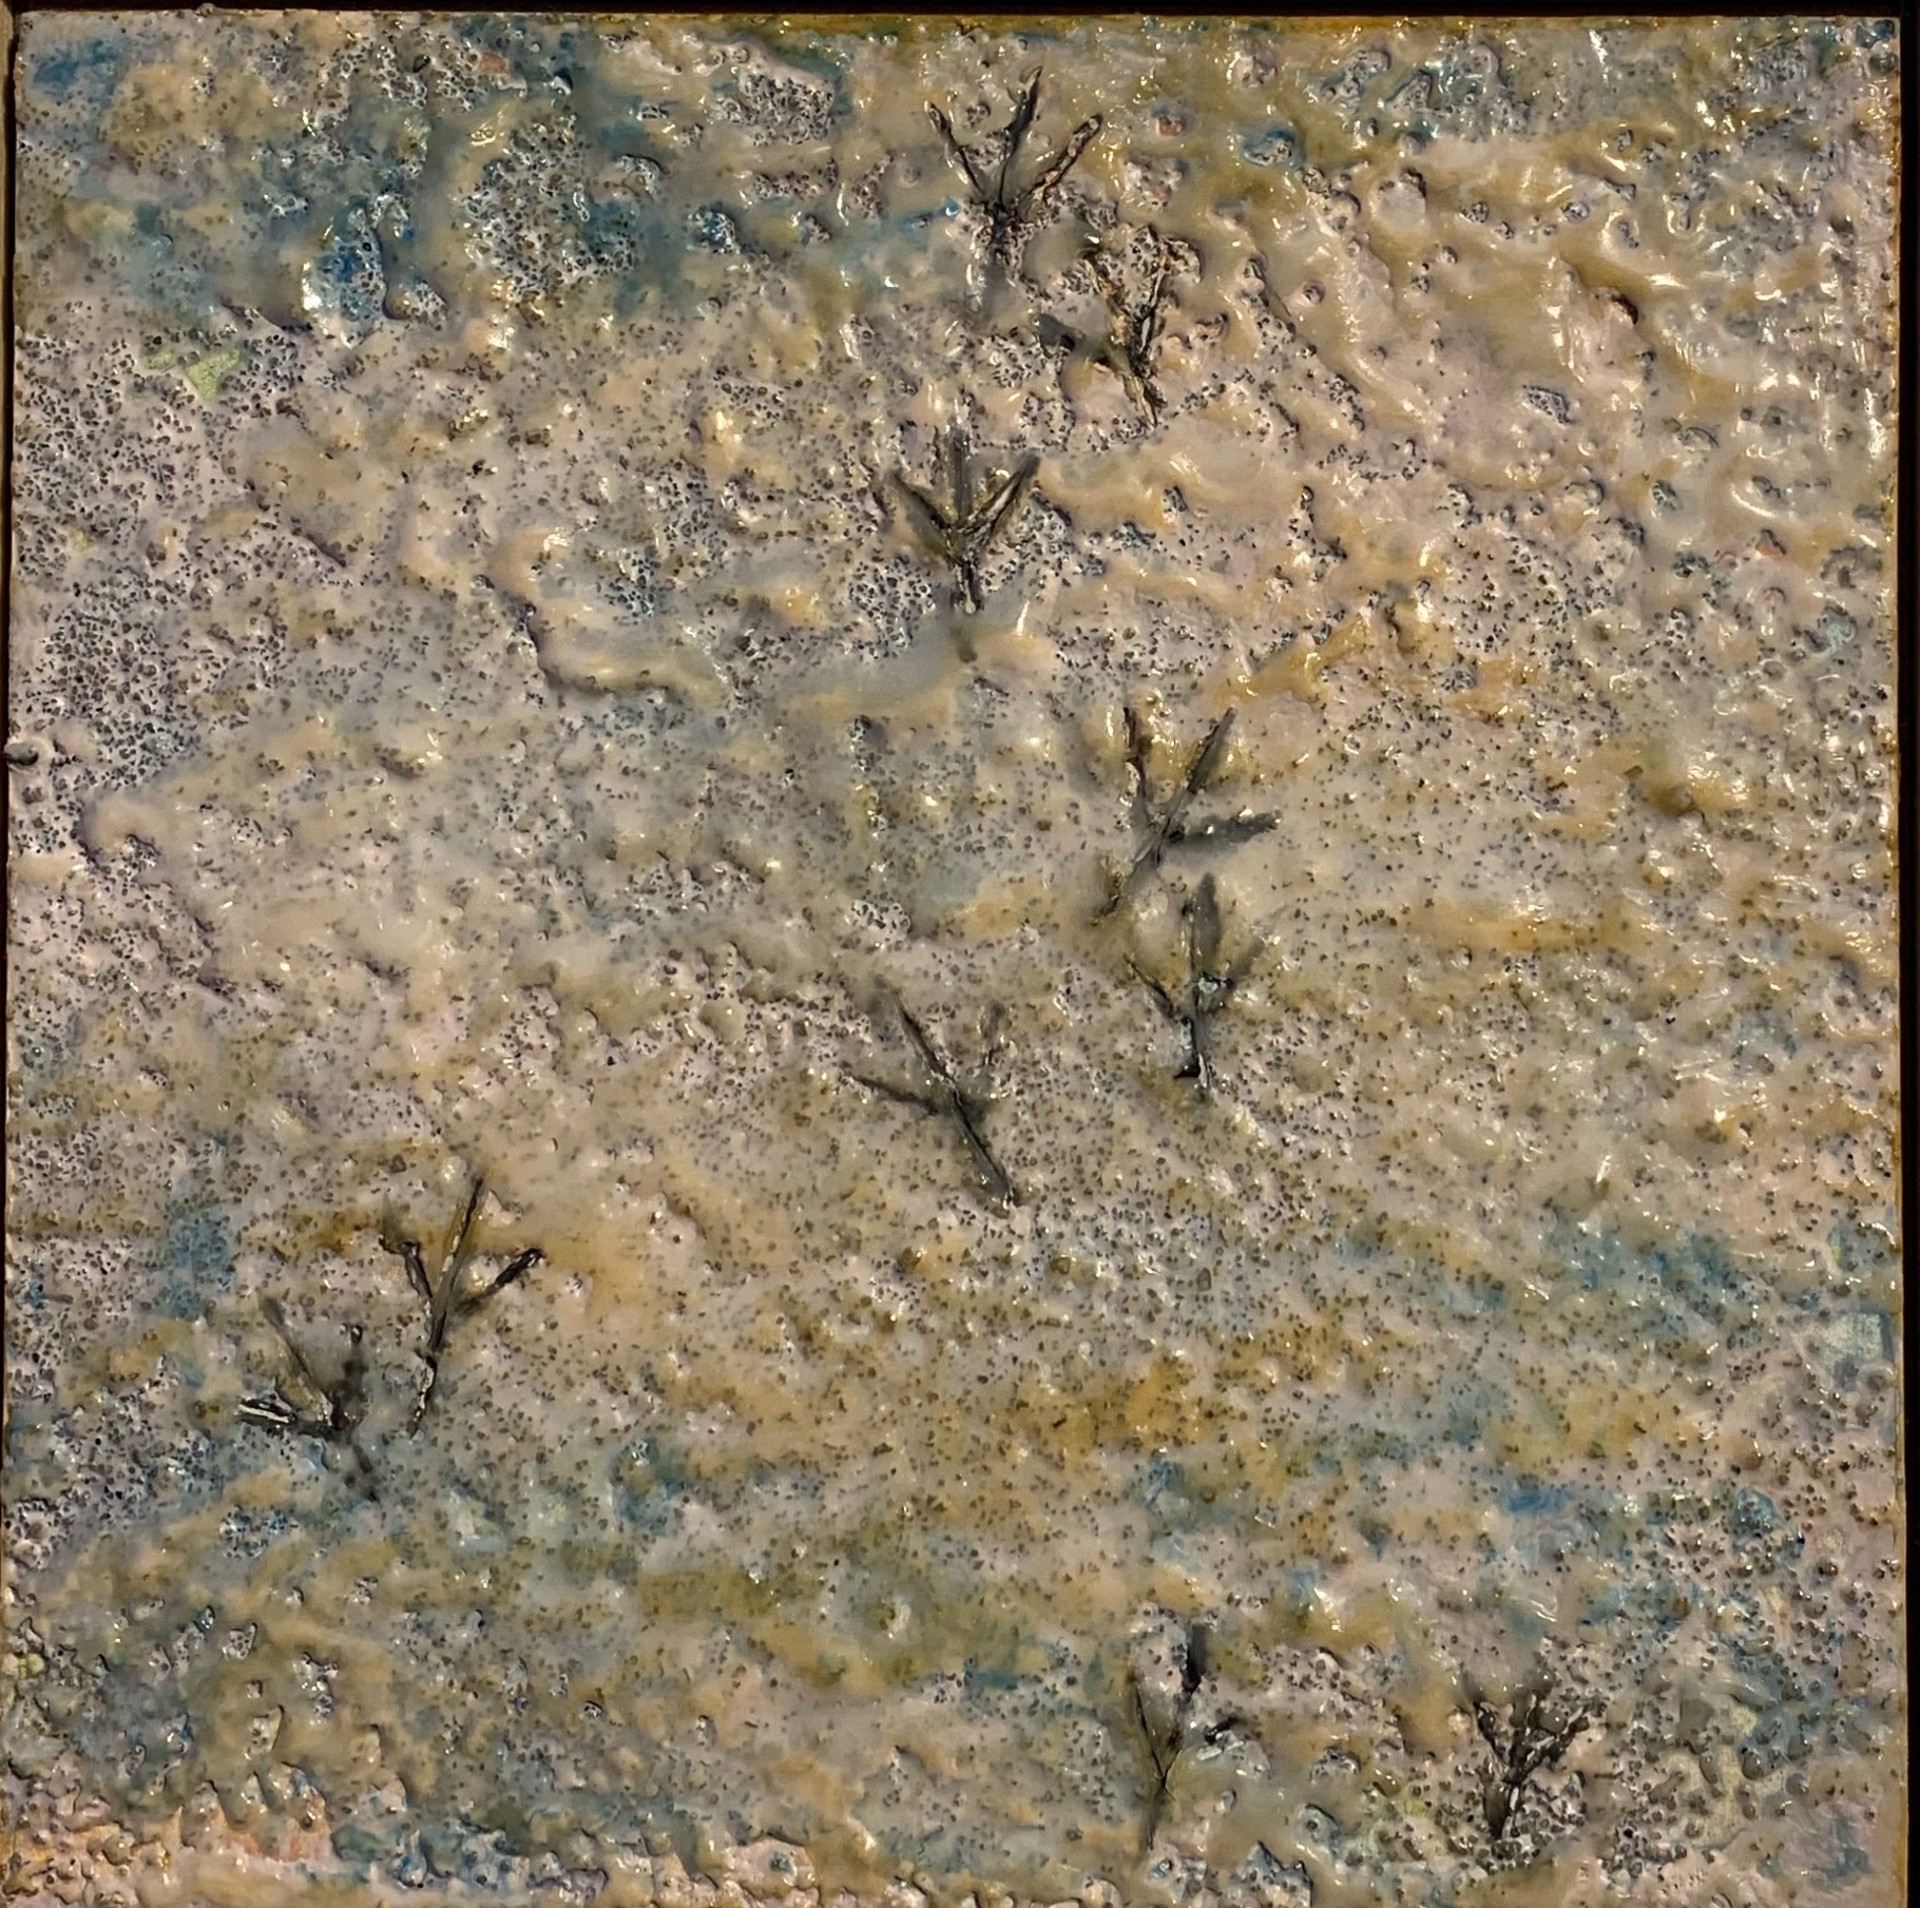 Footprints In The Sand by Deborah Kerr